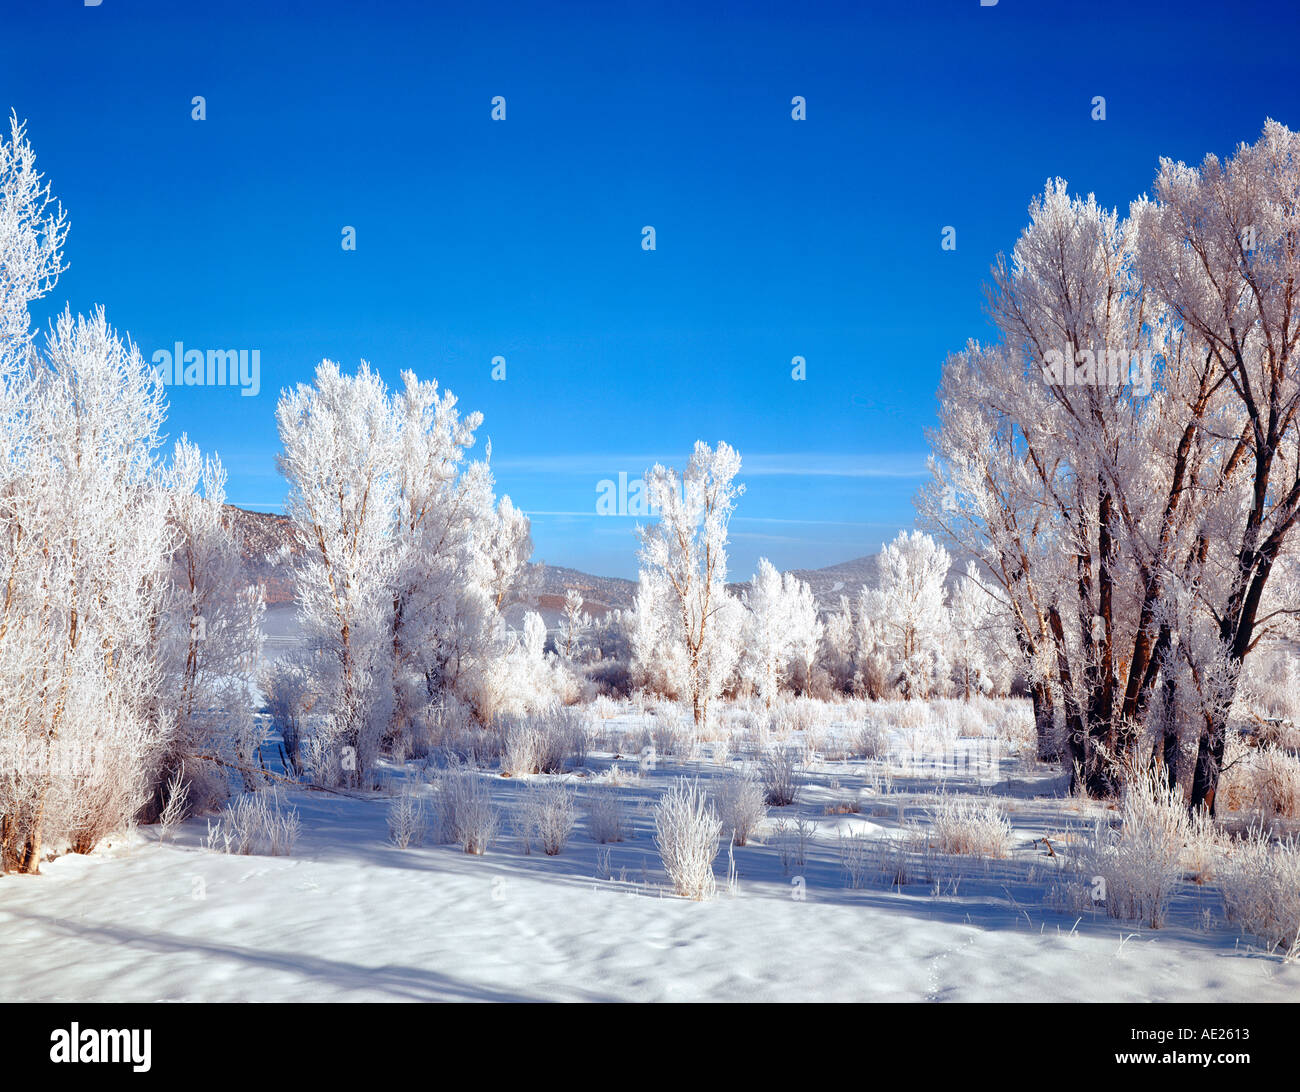 Pioppi neri americani alberi coperti di neve e ghiaccio nei pressi di Ouray Colorado USA Foto Stock